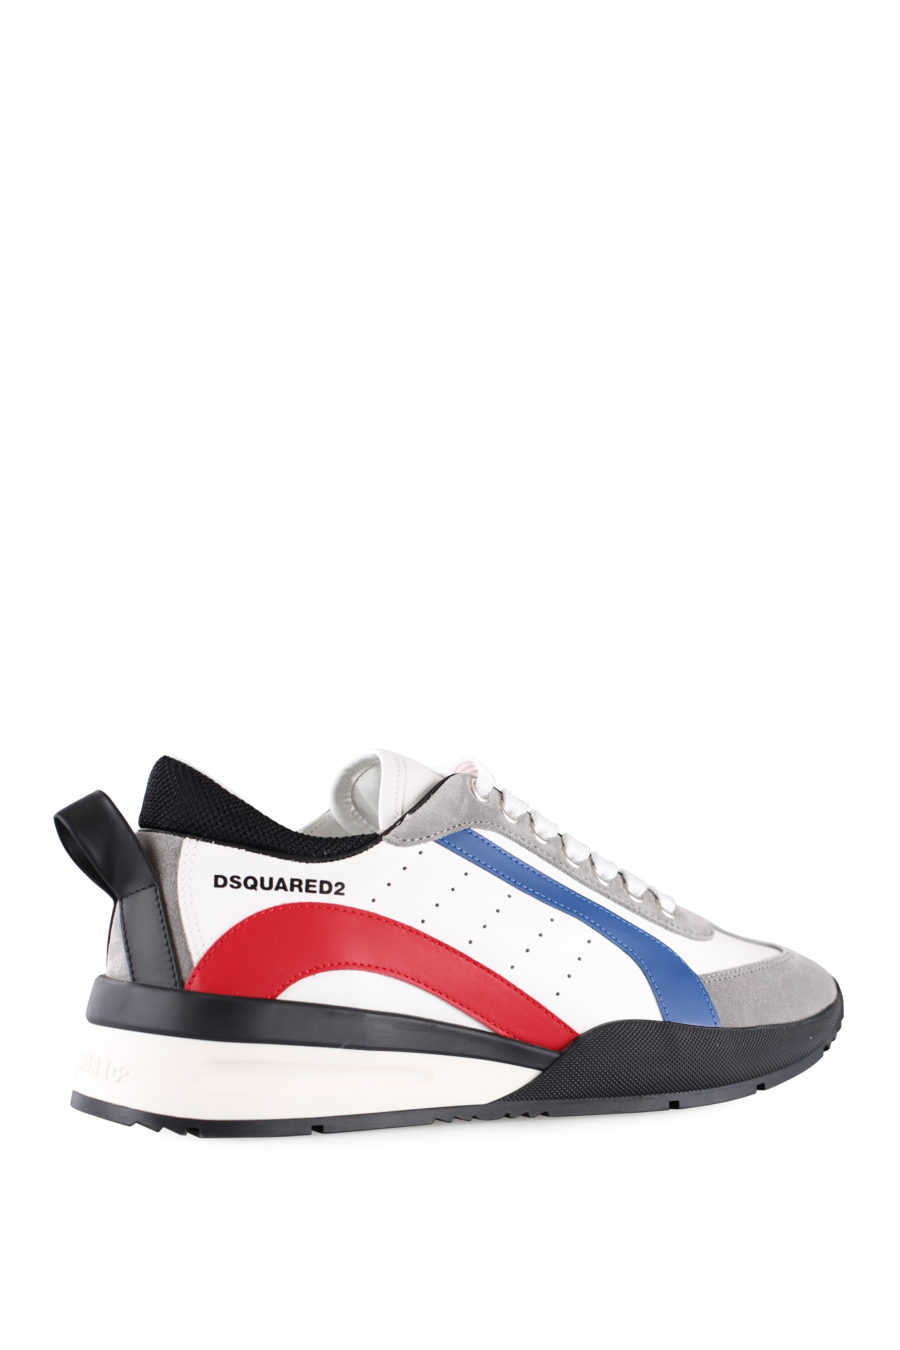 Zapatillas blancas multicolor y logo pequeño - IMG 0020